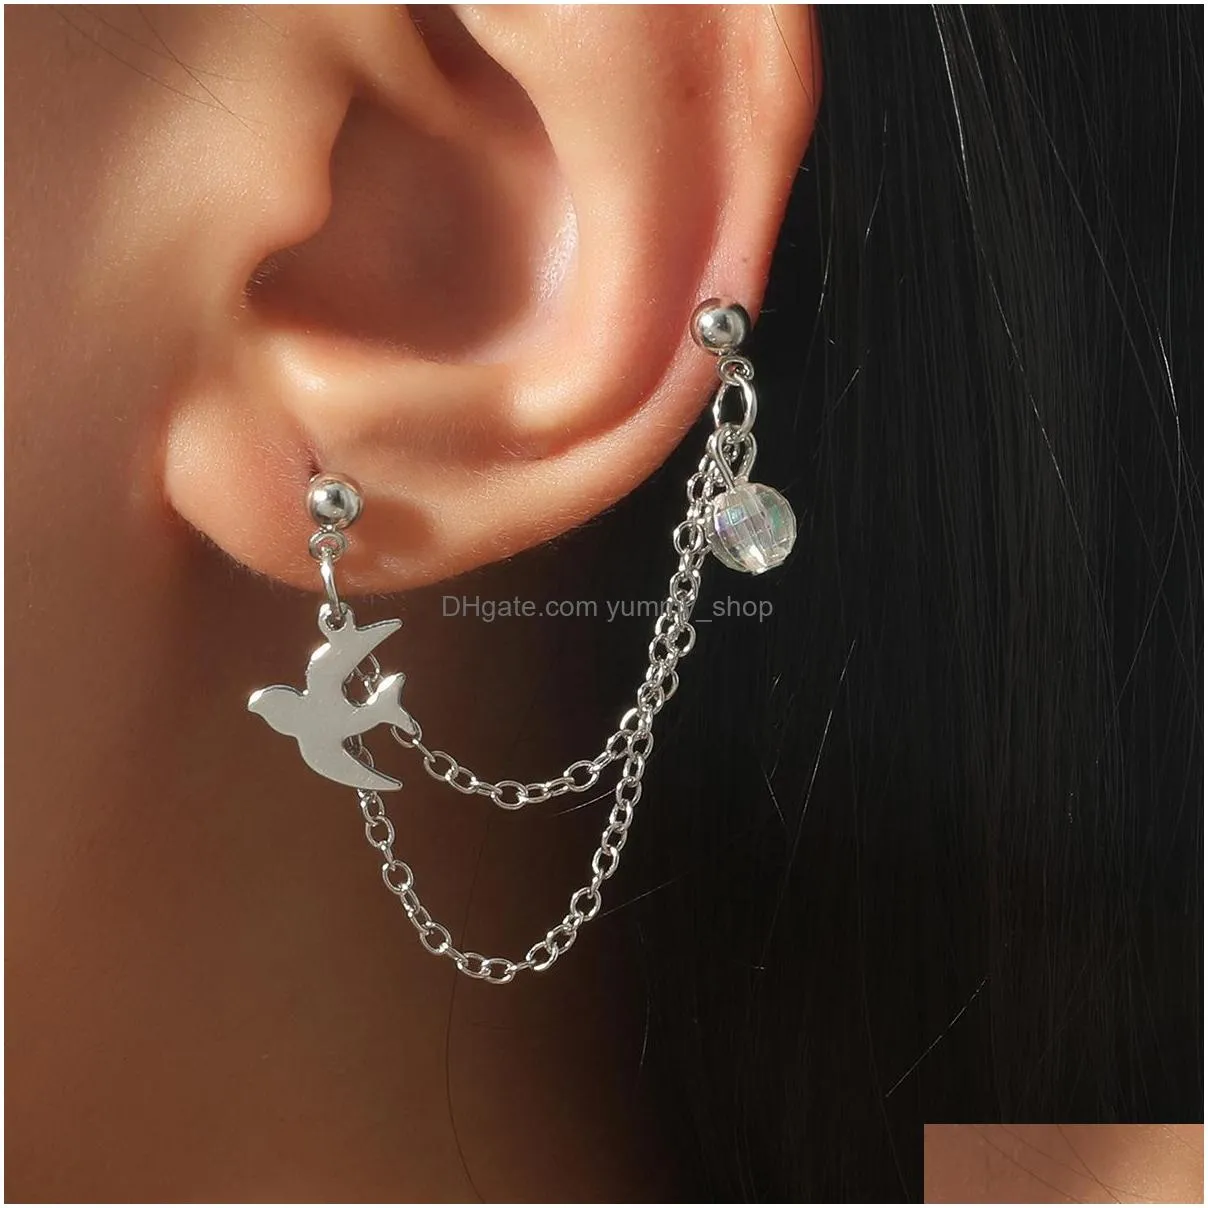 fashion jewelry ears clip swallow chain ear cuff onepiece stud earrings